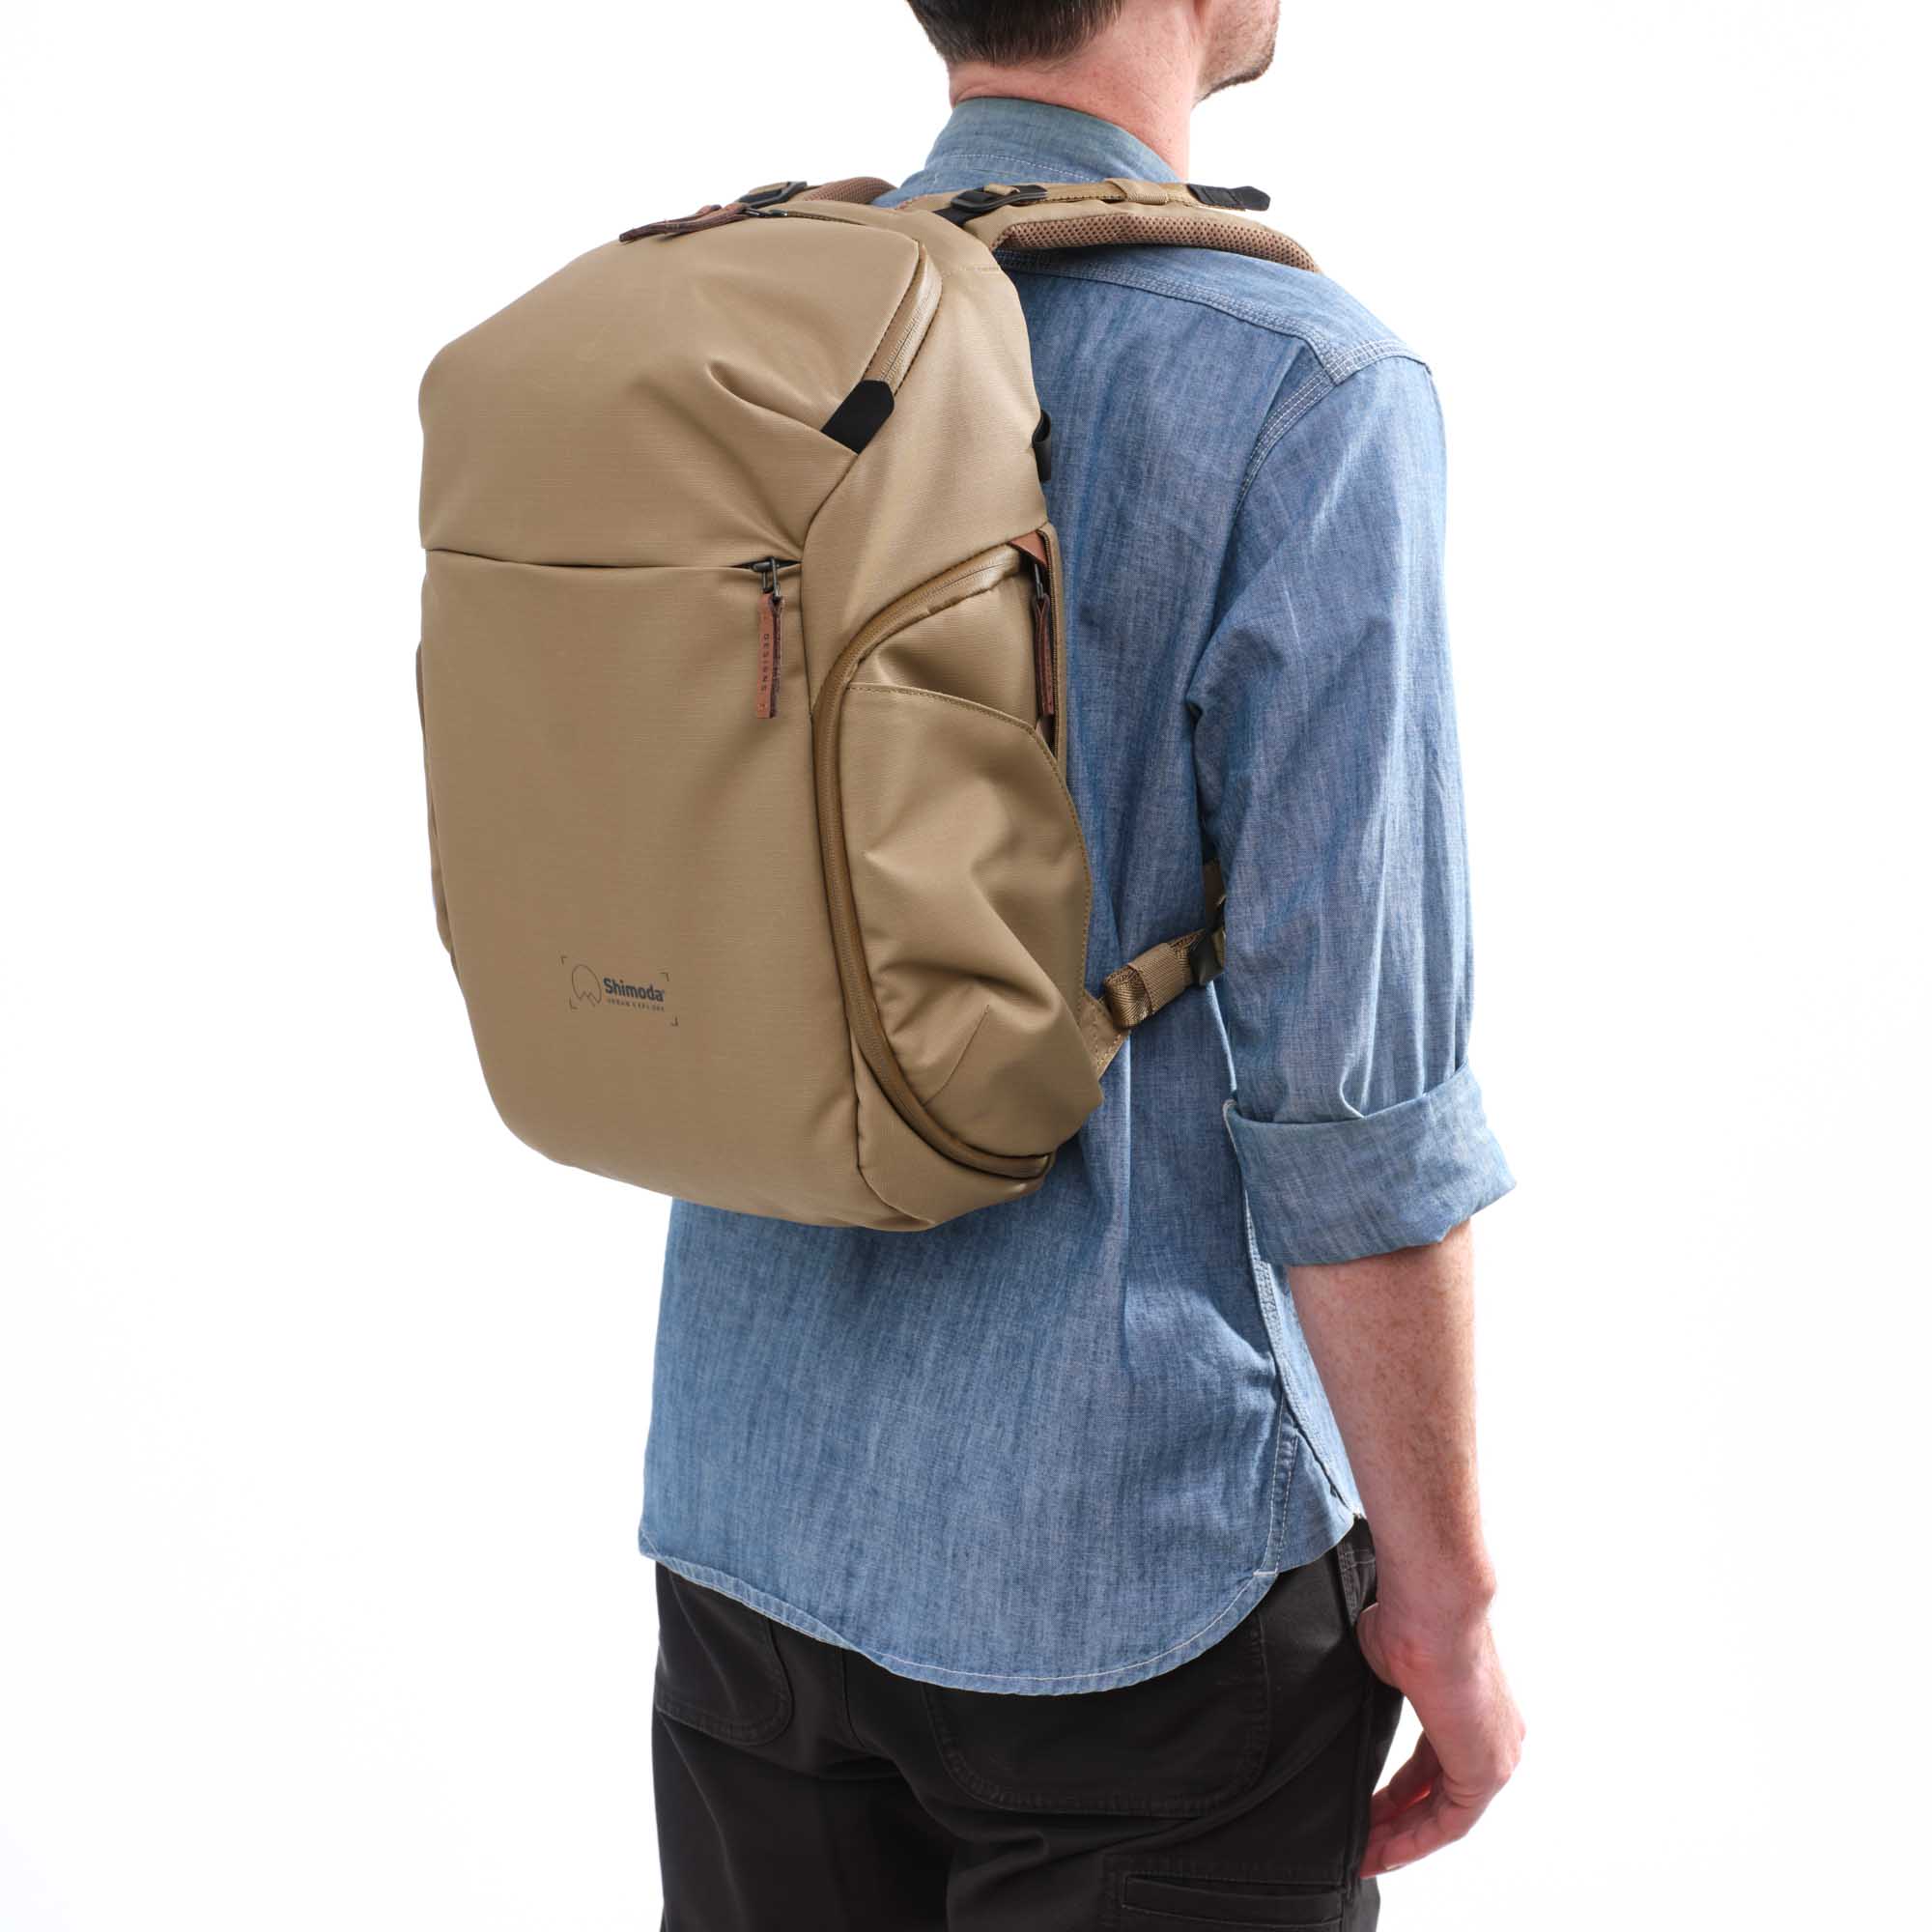 Shimoda Designs Explore 20 Rucksack in Beige, Lifestyle Foto des Ruckacks auf einer Person